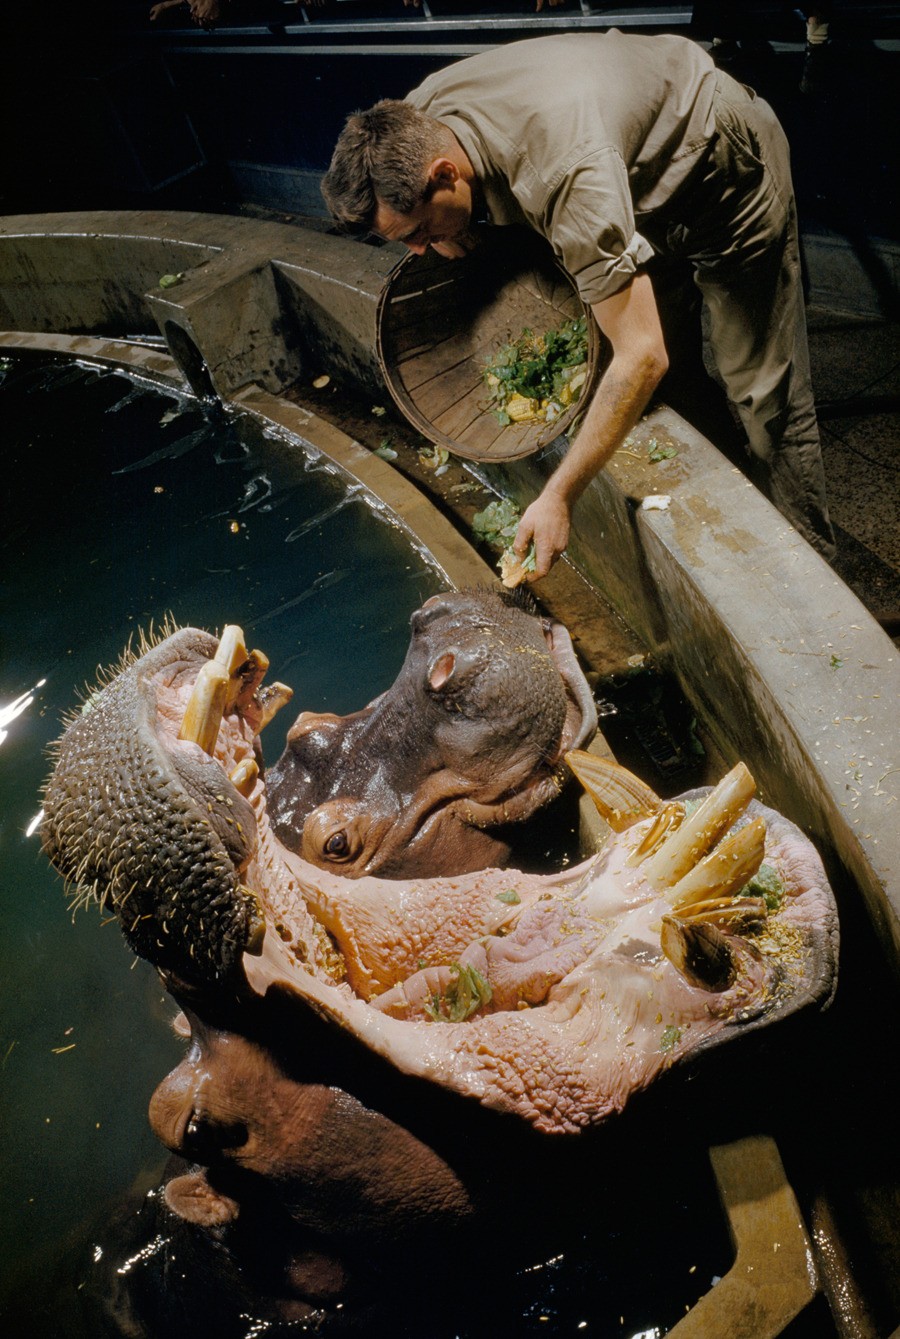 Кормление бегемотов, 1957. Фотографы Роберт Ф. Сиссон и Дональд МакБейн